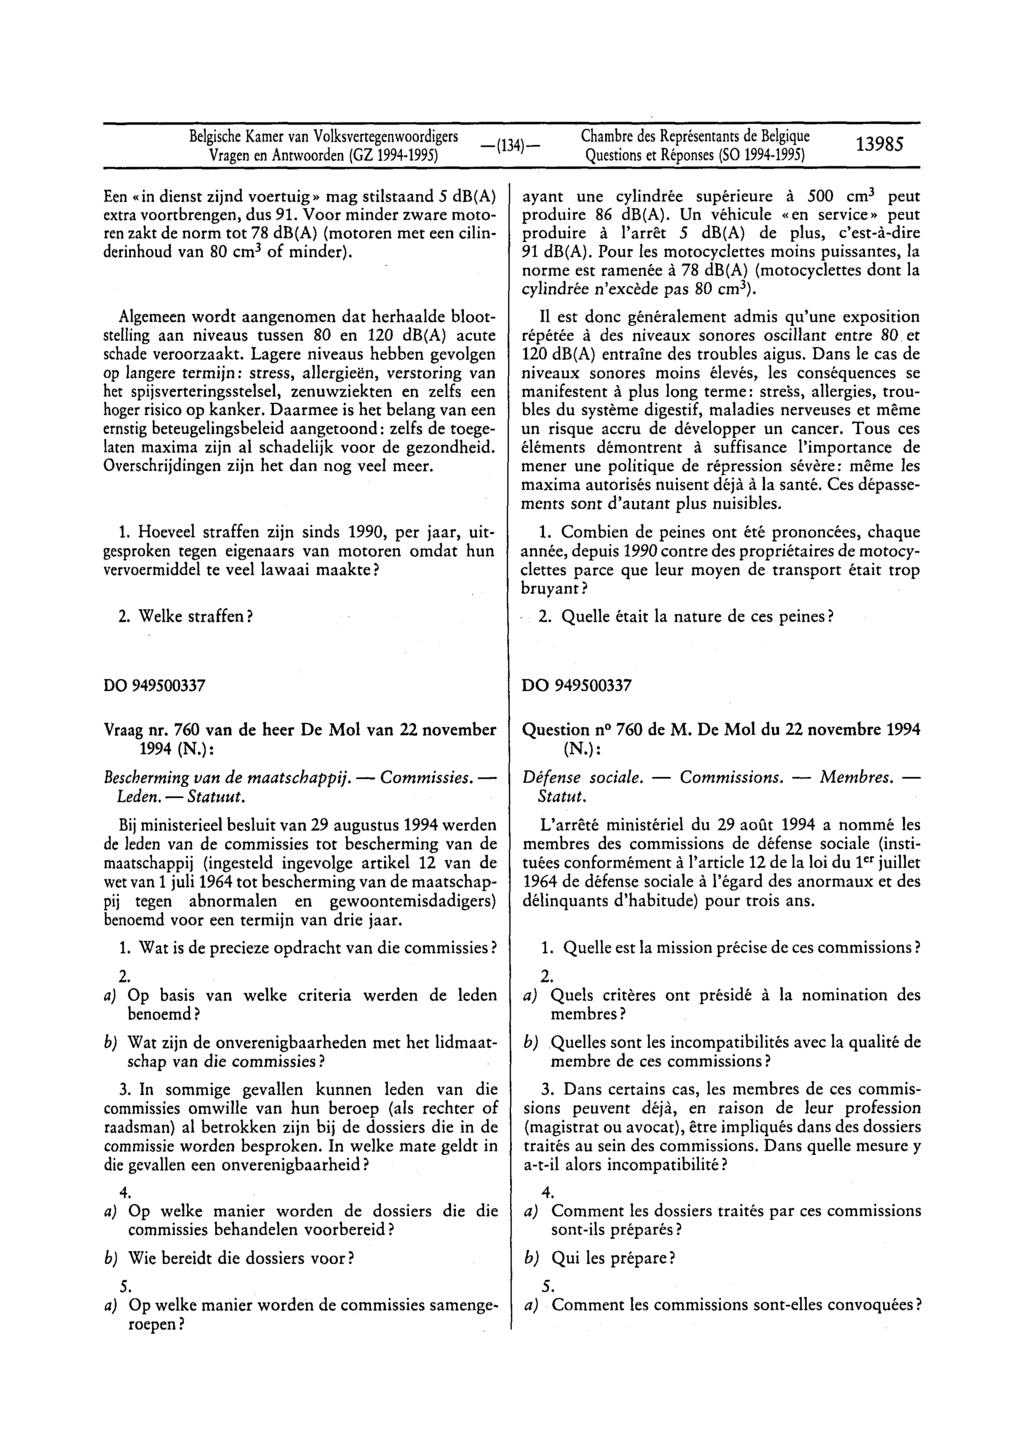 BelgischeKamervan Volksvertegenwoordigers Vragenen Antwoorden(GZ 1994 1995) Questionset Réponses(SO1994 1995) 13985 Een «in dienst zijnd voertuig» mag stilstaand 5 db(a) extra voortbrengen, dus 91.